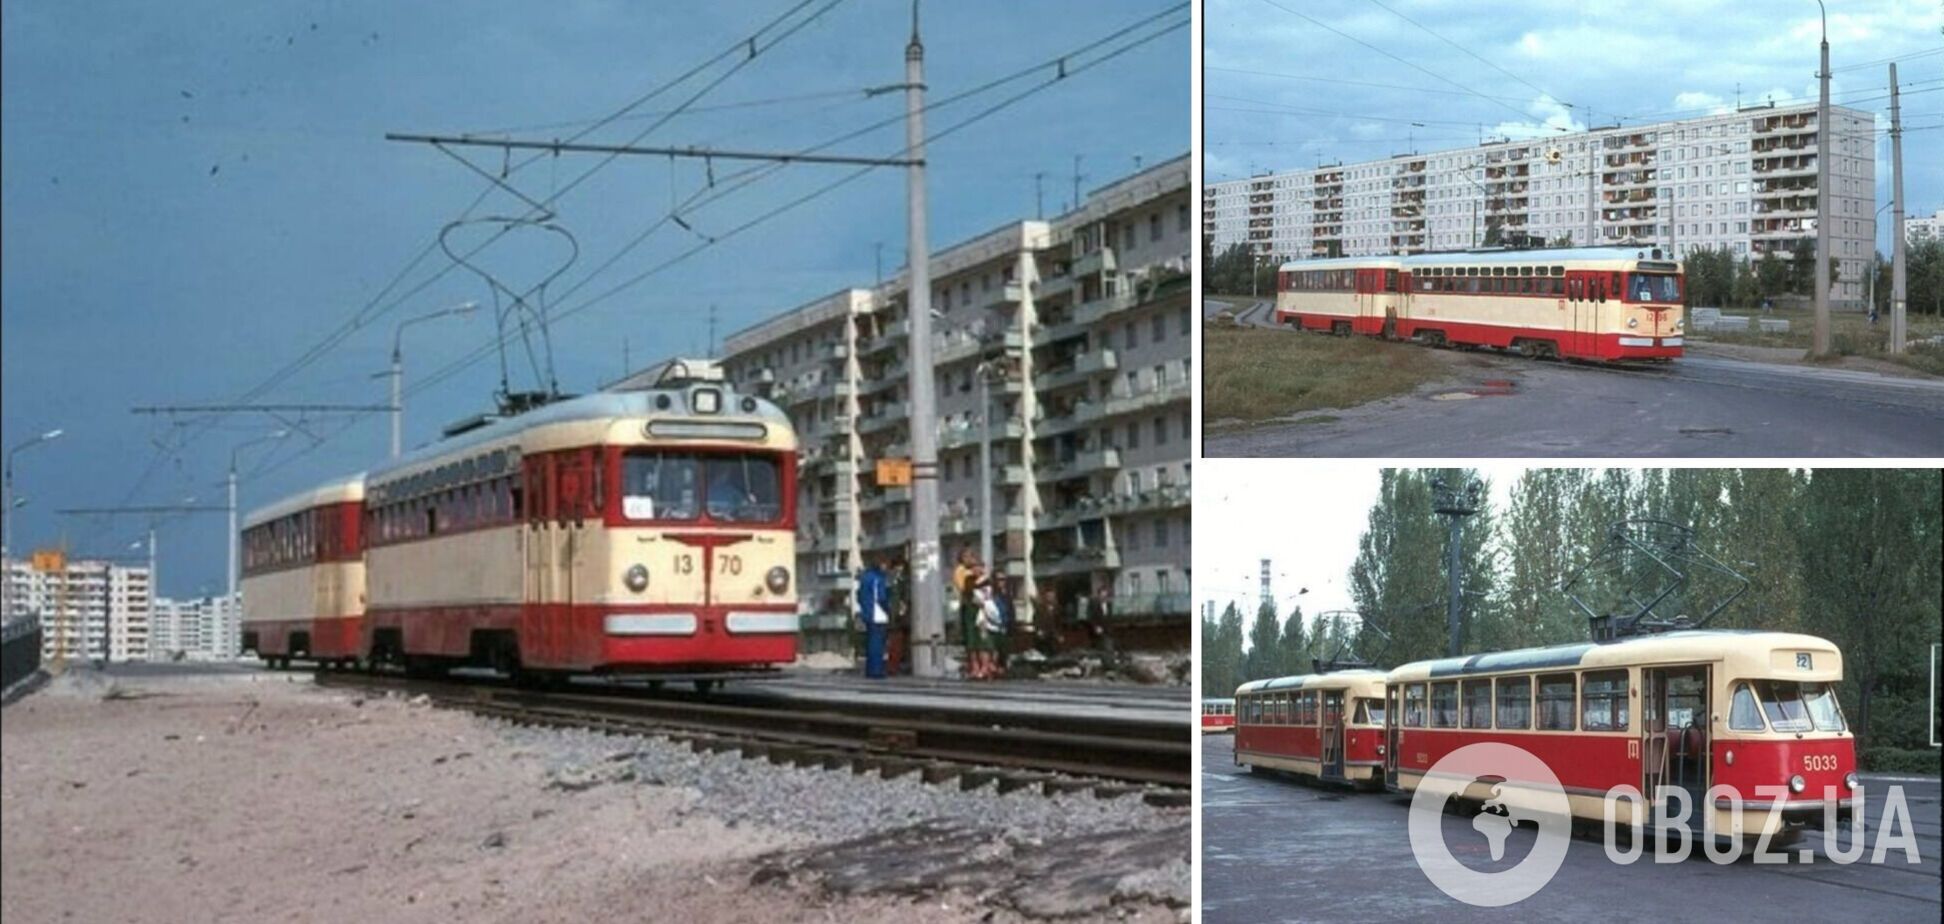 Київські трамваї у 1978 році